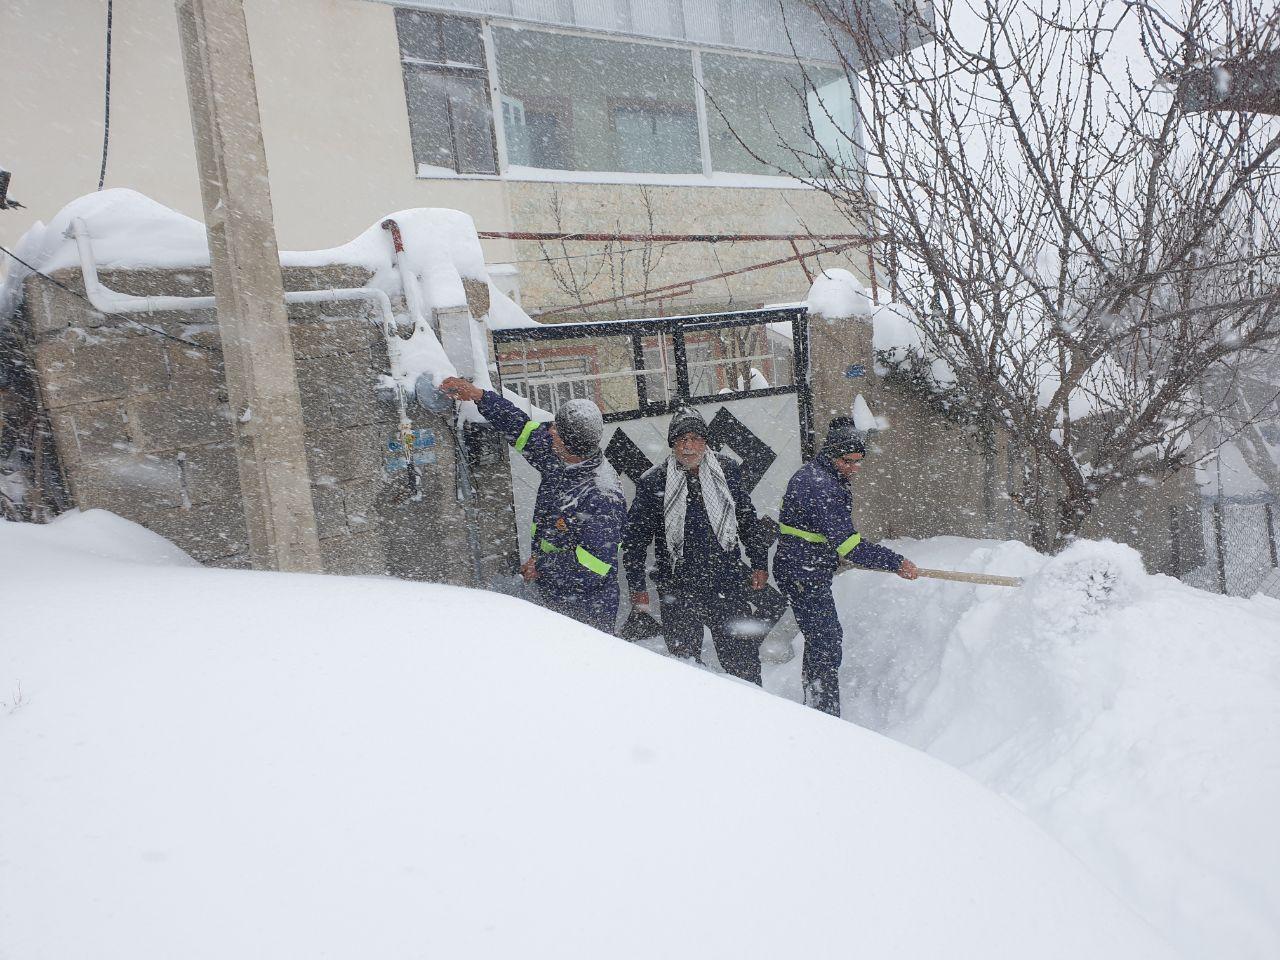 شرکت گاز استان گیلان از برف سنگین 98 هم سربلند بیرون آمد